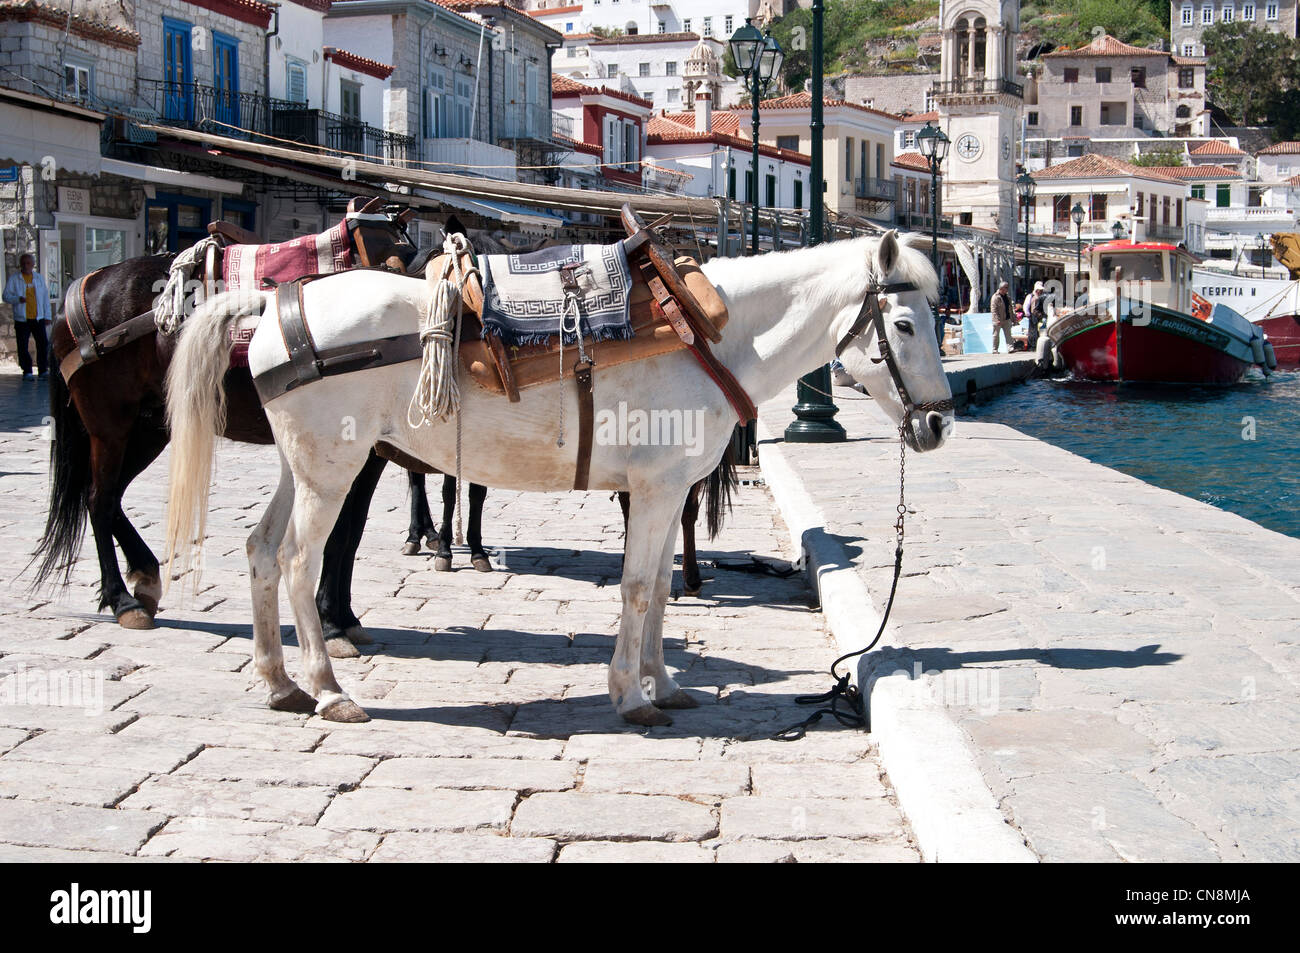 Hydra, isole Saroniche, Grecia- degli asini e dei muli presso il porto, trasporto tradizionale dell'isola Foto Stock